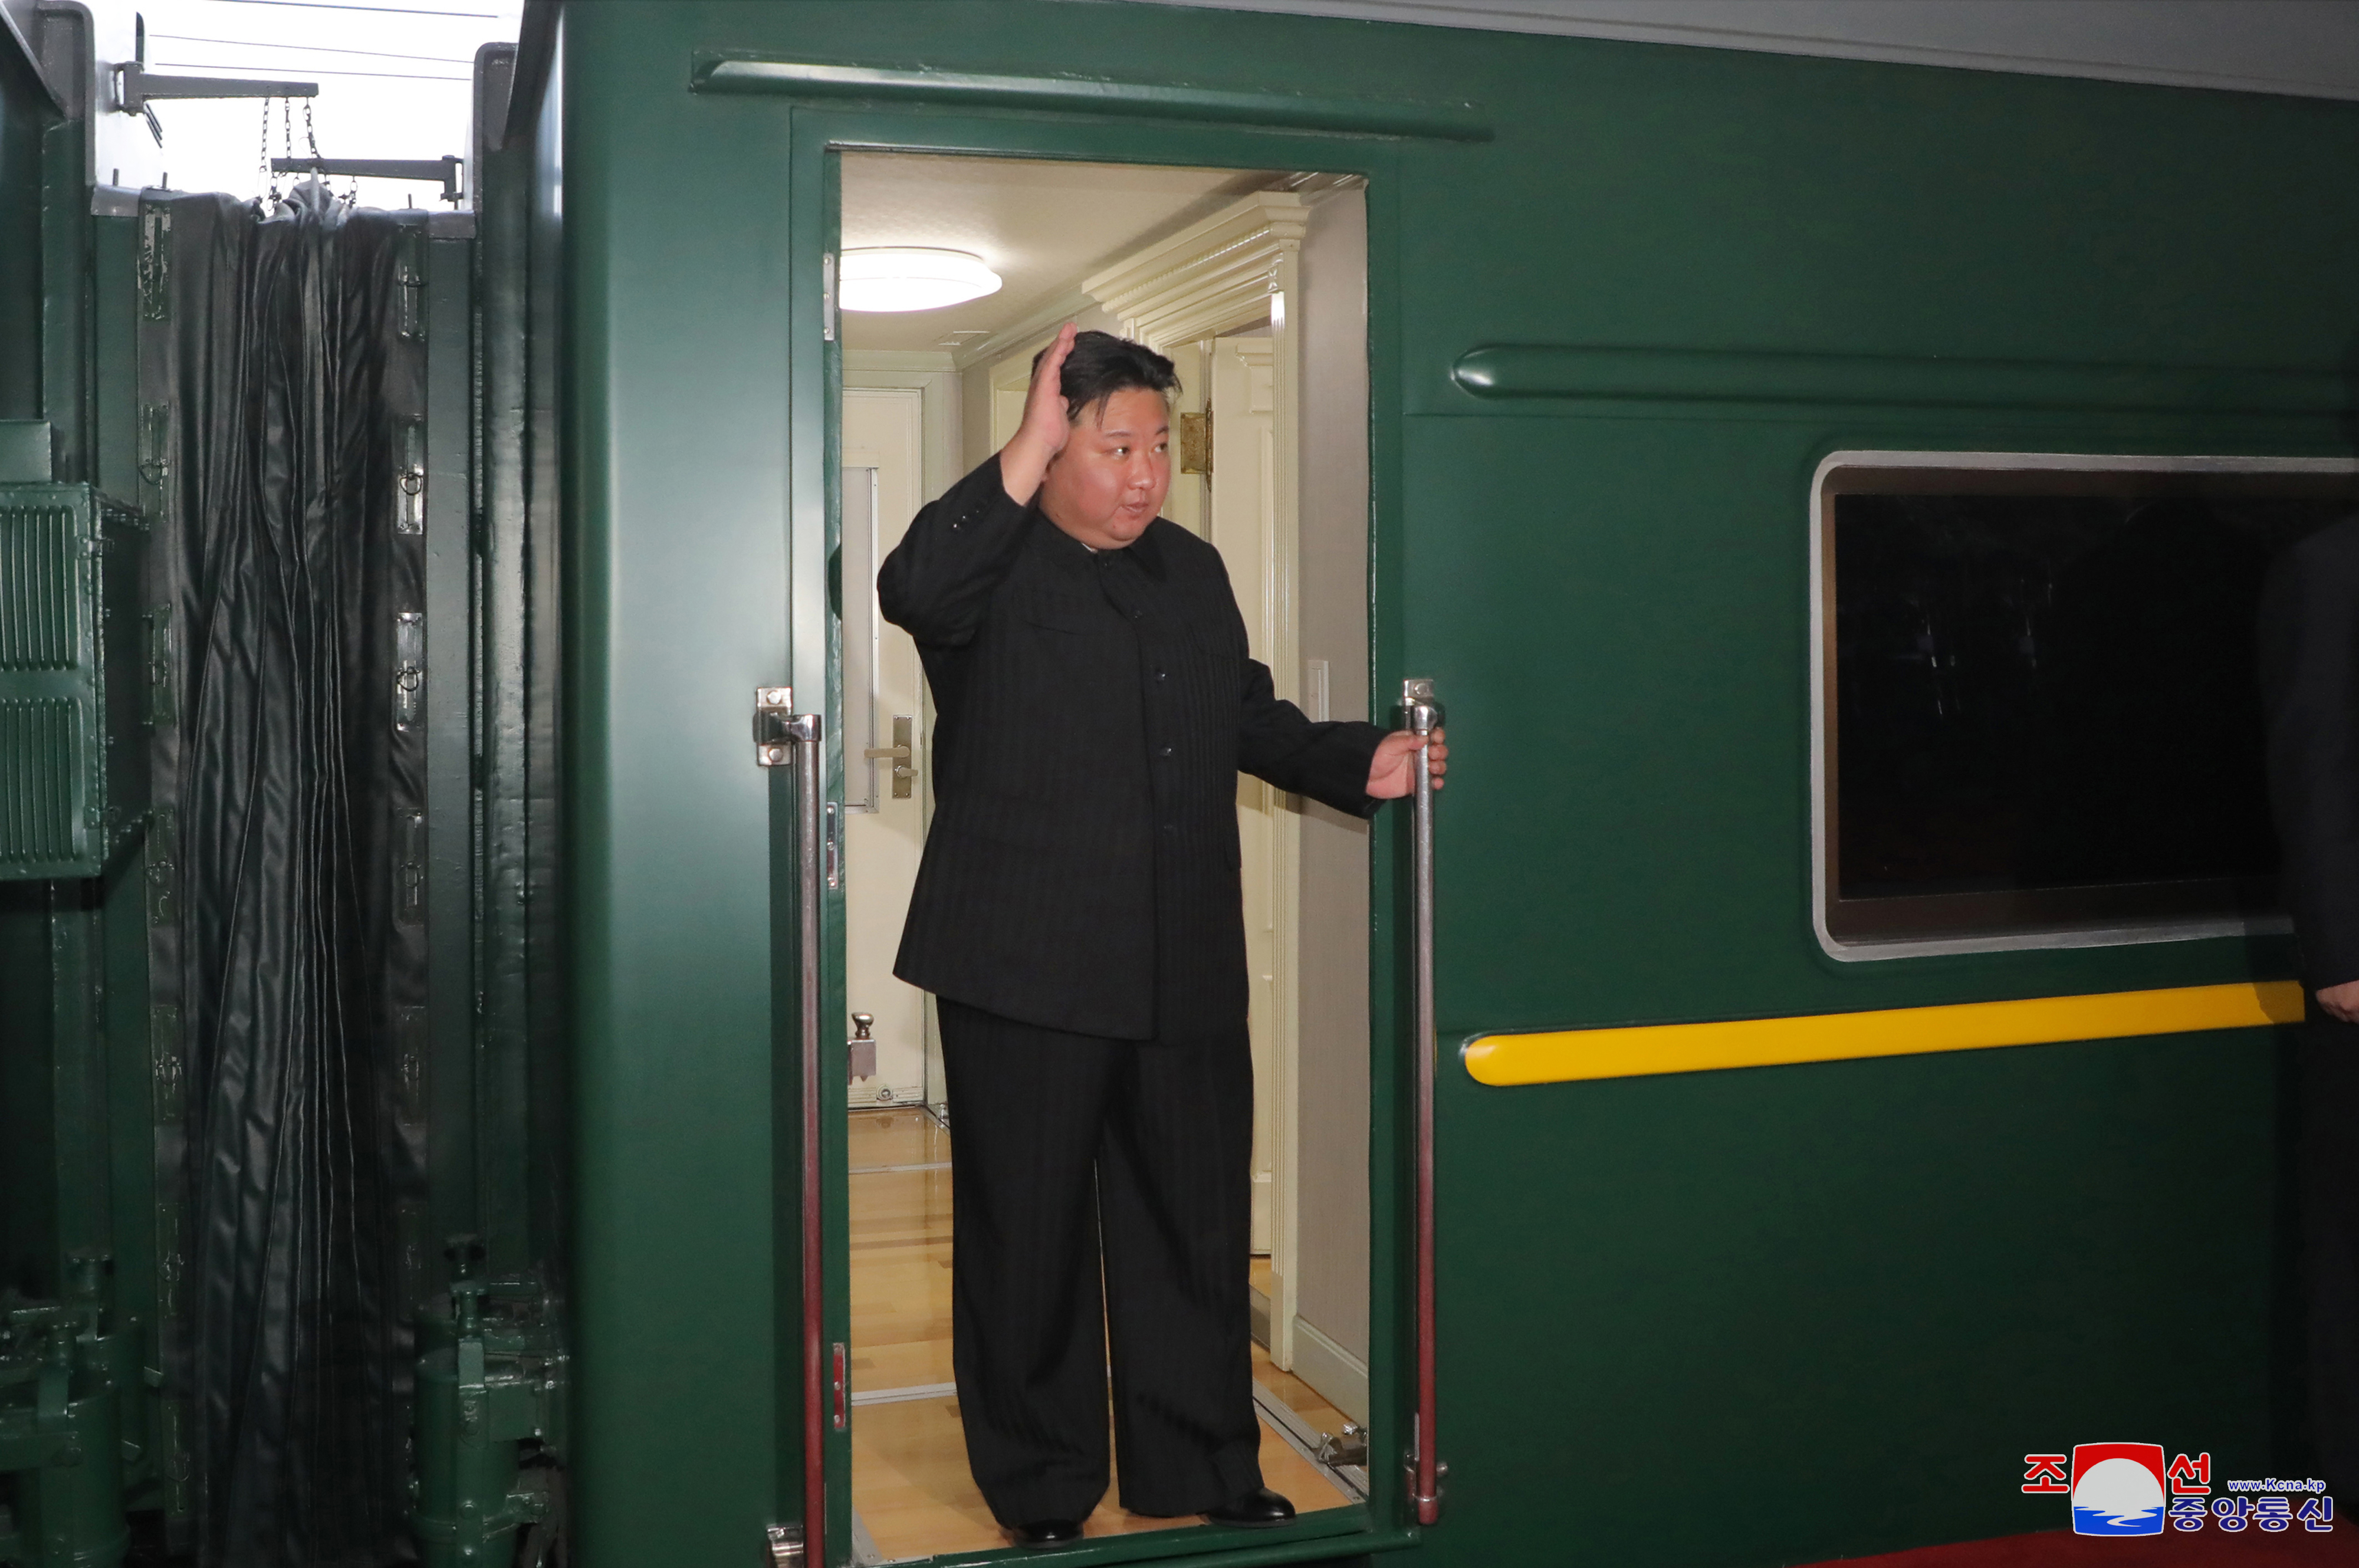 김정은 국방위원장이 러시아연방을 방문하기위해 9월 10일 오후 전용열차로 평양을 출발했다고 조선중앙통신이 12일 보도했다.